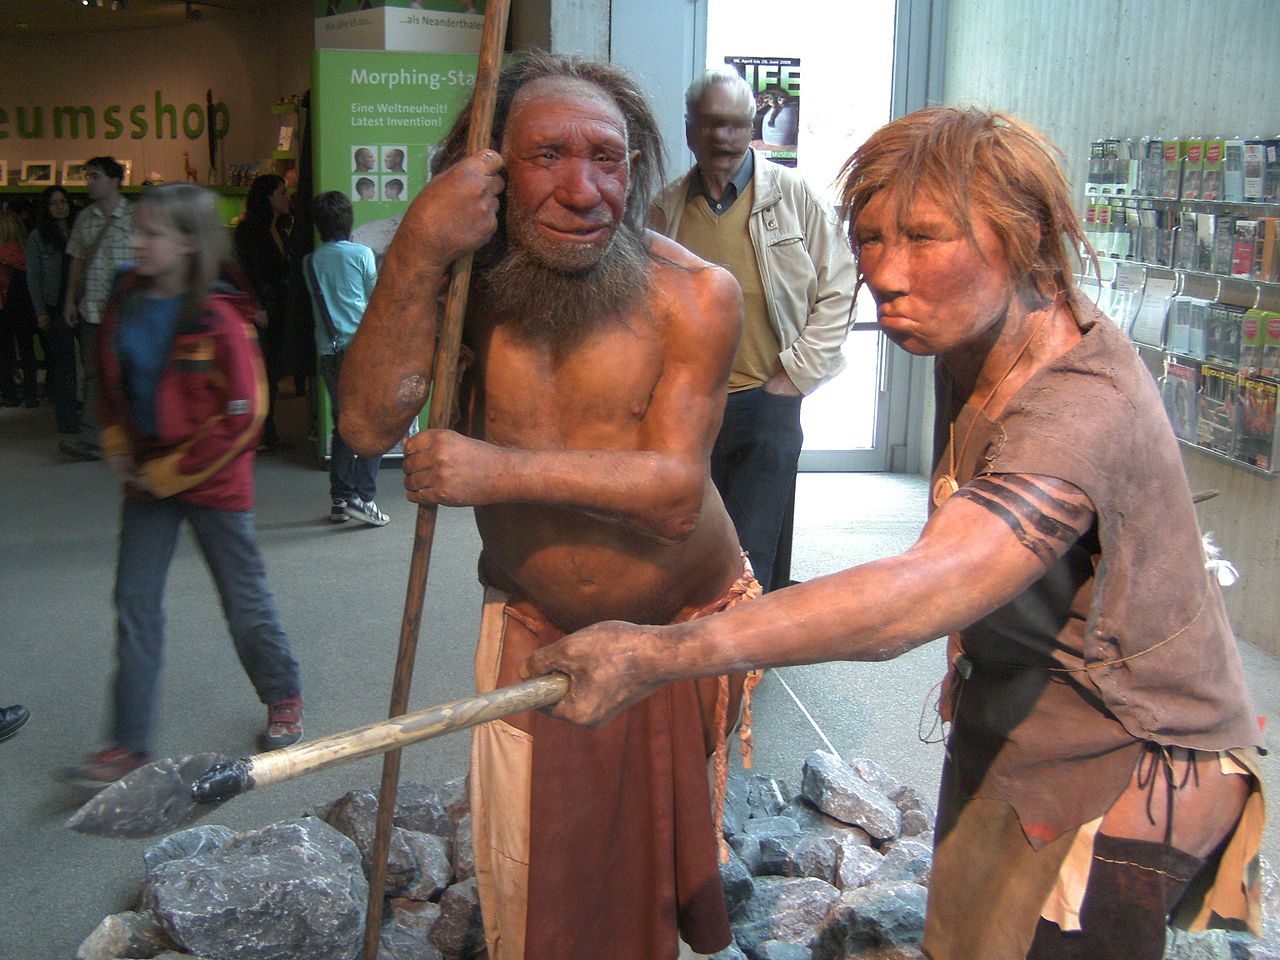 1280px-Neandertala_homo,_modelo_en_Neand-muzeo